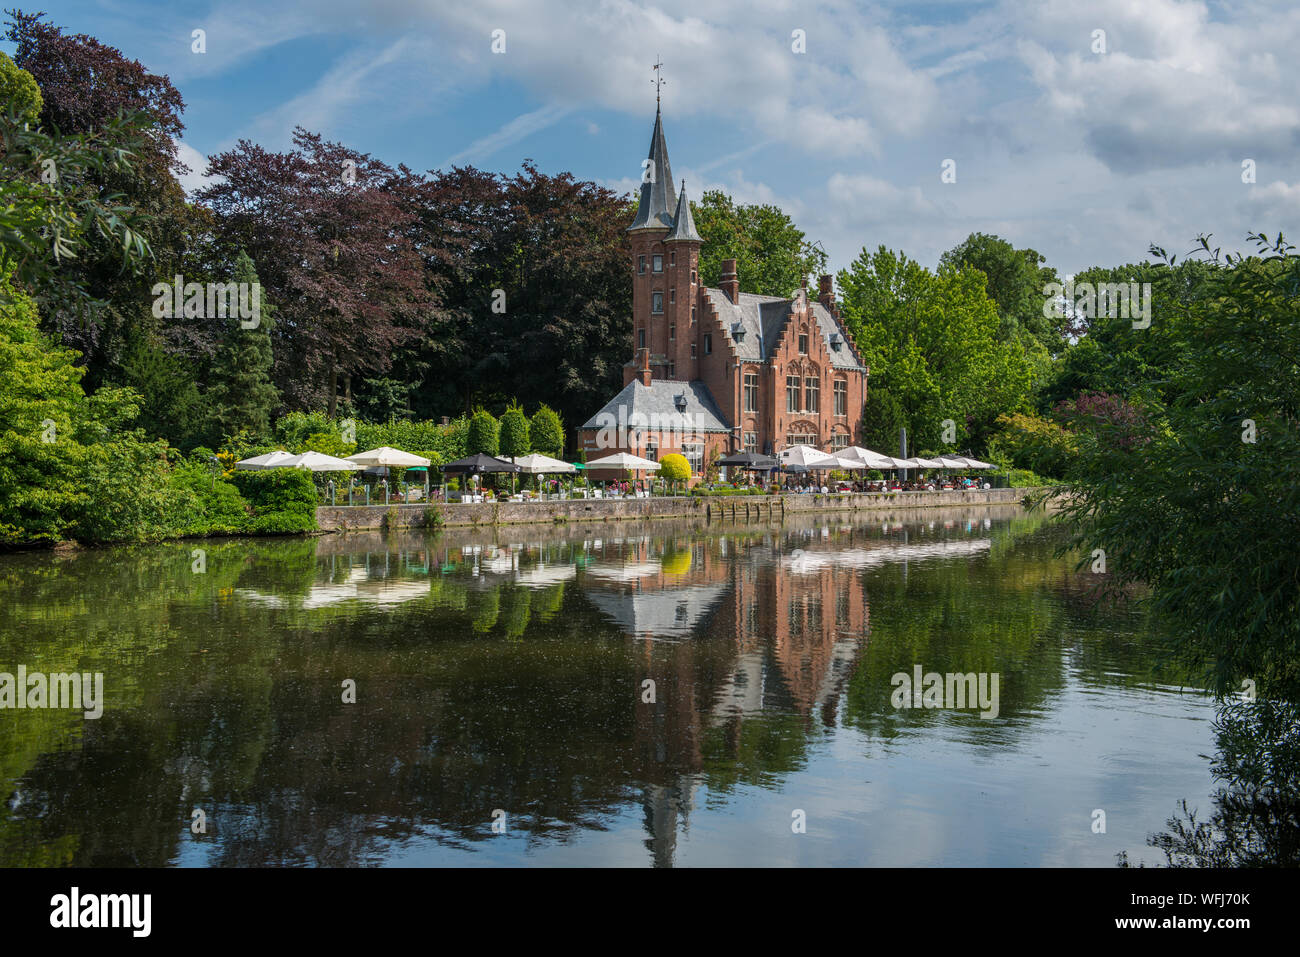 Castello vicino a Minnewater ( Lago di amore ) in Bruges, Belgio Foto Stock